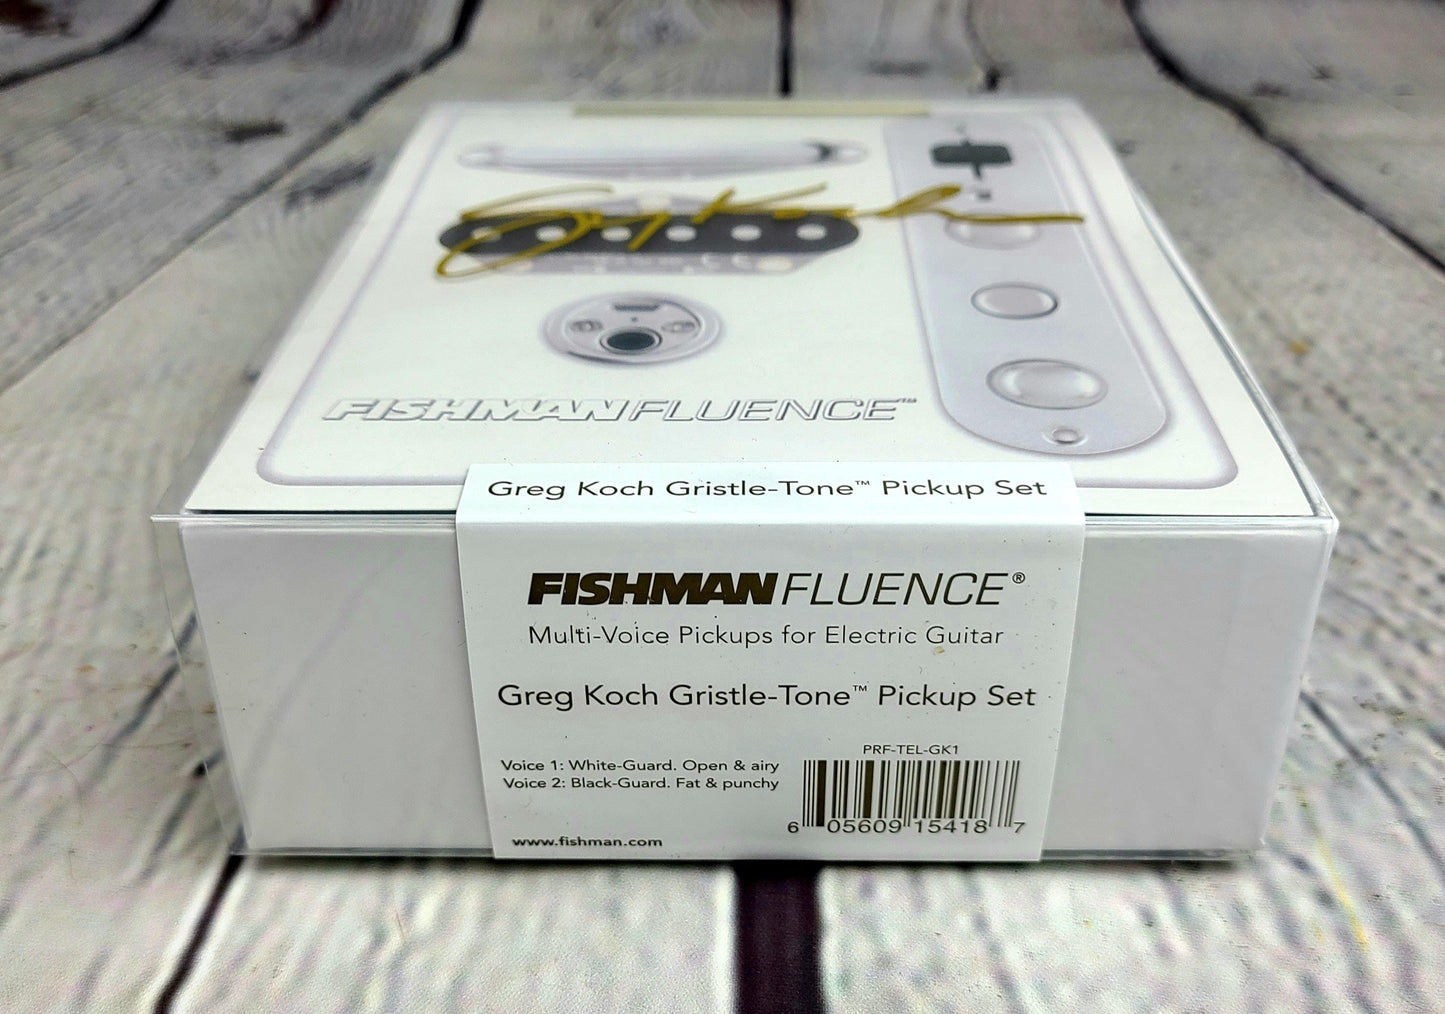 Fishman Fluence Greg Koch Gristletone Tele Pickup Set PRFTELGK1 - Guitar Brando